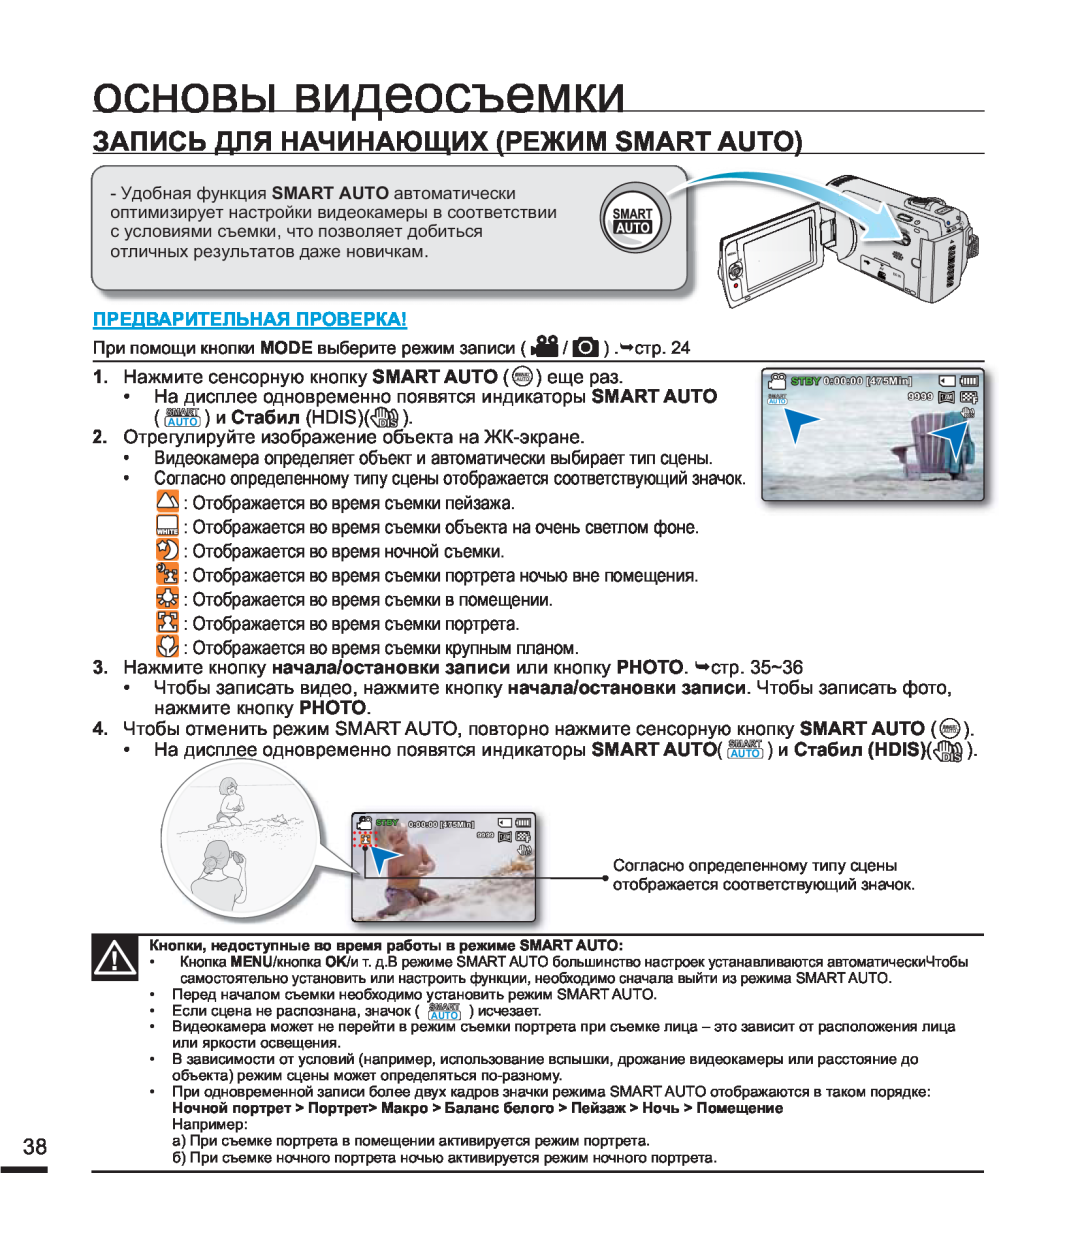 Samsung SMX-F44BP/EDC manual ɨɫɧɨɜɵɜɢɞɟɨɫɴɟɦɤɢ, ɁȺɉɂɋɖȾɅəɇȺɑɂɇȺɘɓɂɏɊȿɀɂɆ60$57$872, ɉɊȿȾȼȺɊɂɌȿɅɖɇȺəɉɊɈȼȿɊɄȺ 